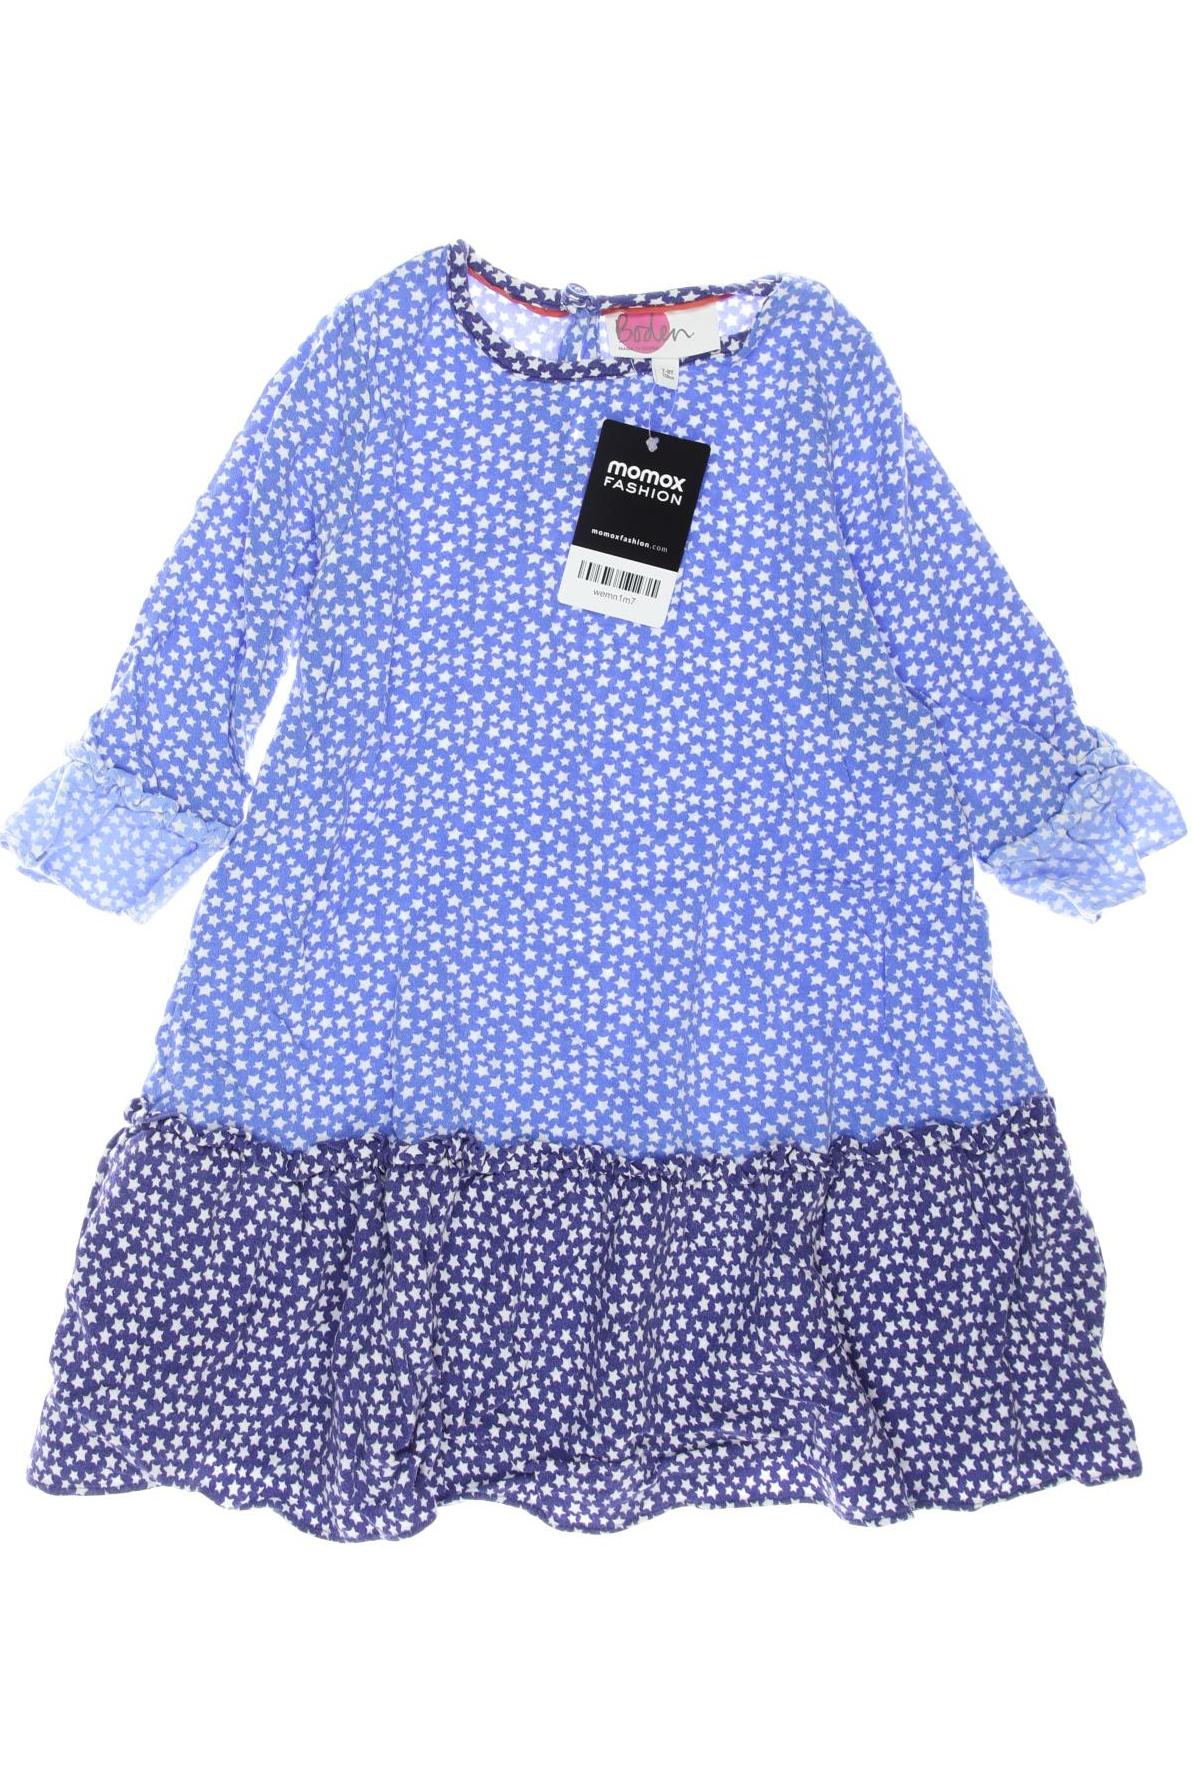 Mini Boden Damen Kleid, blau, Gr. 128 von Mini Boden